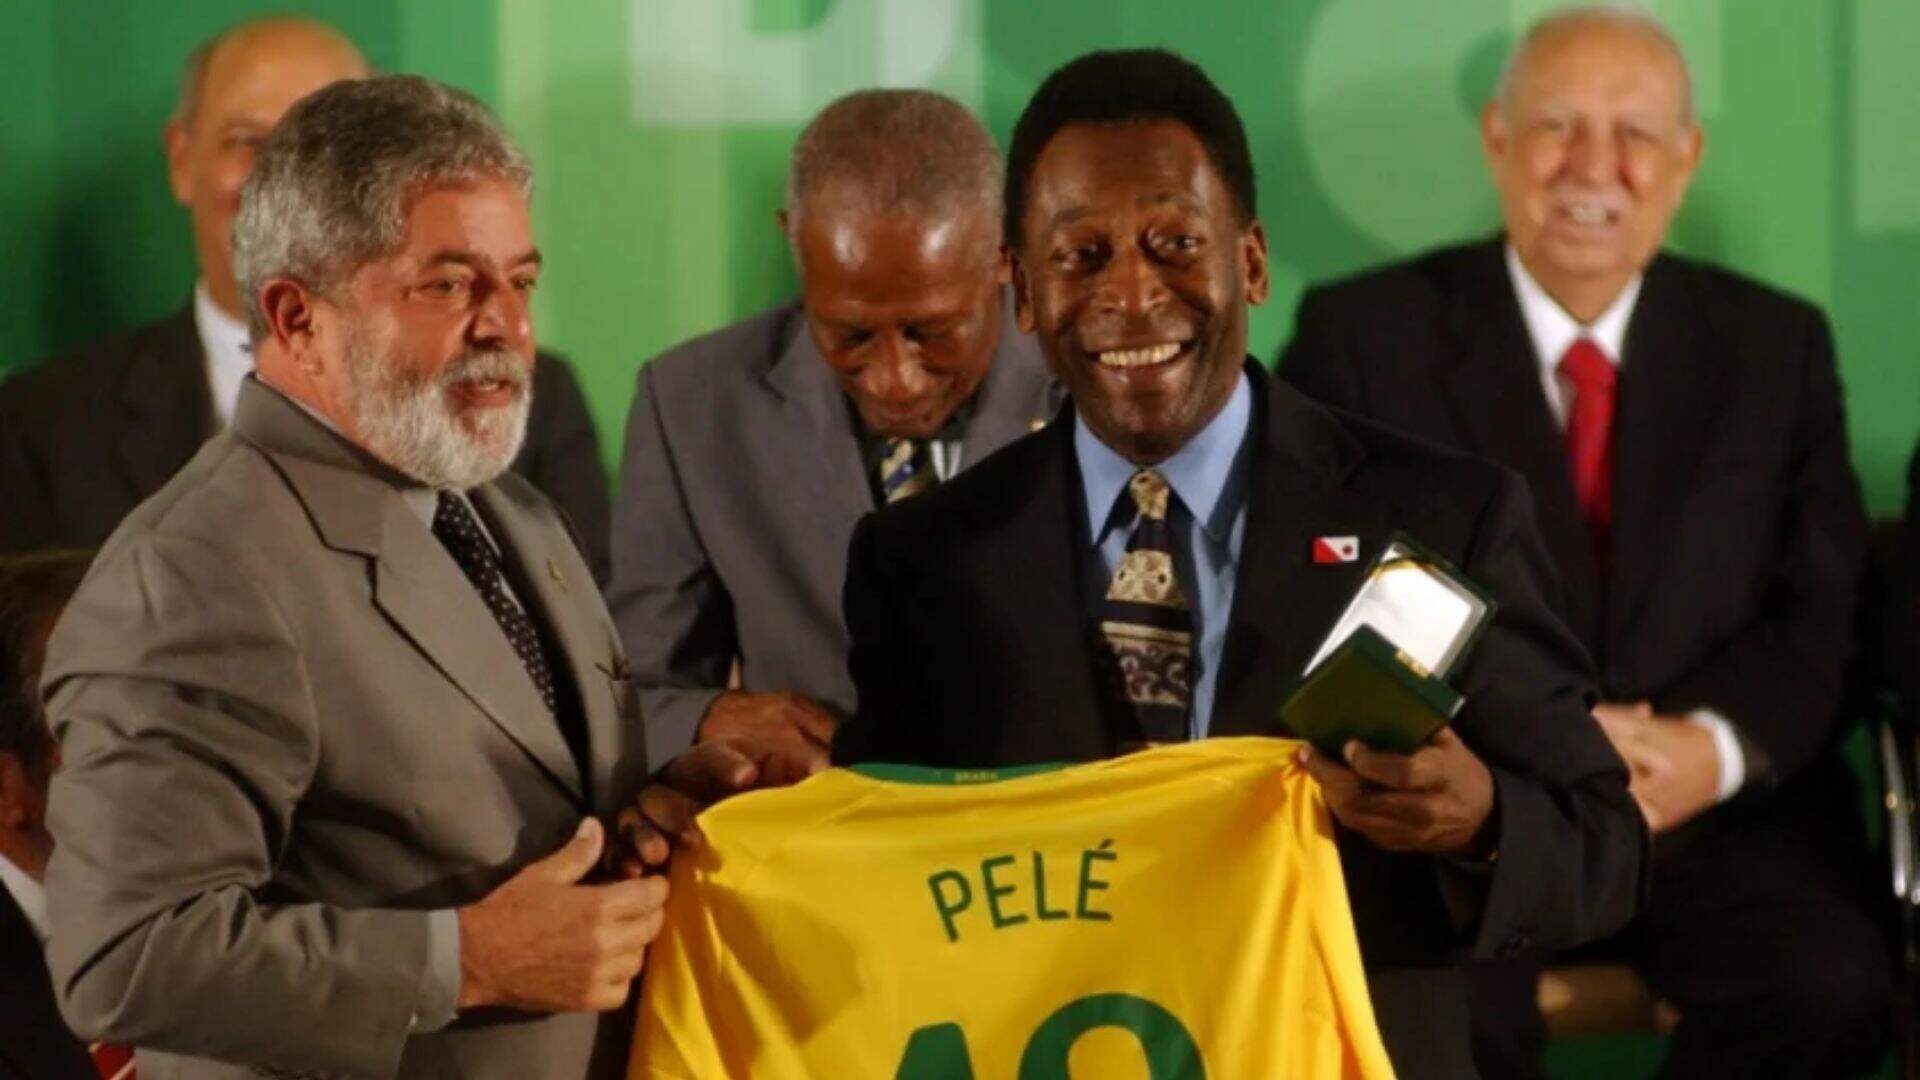 Lula irá ao velório de Pelé na manhã de terça-feira, afirma Planalto